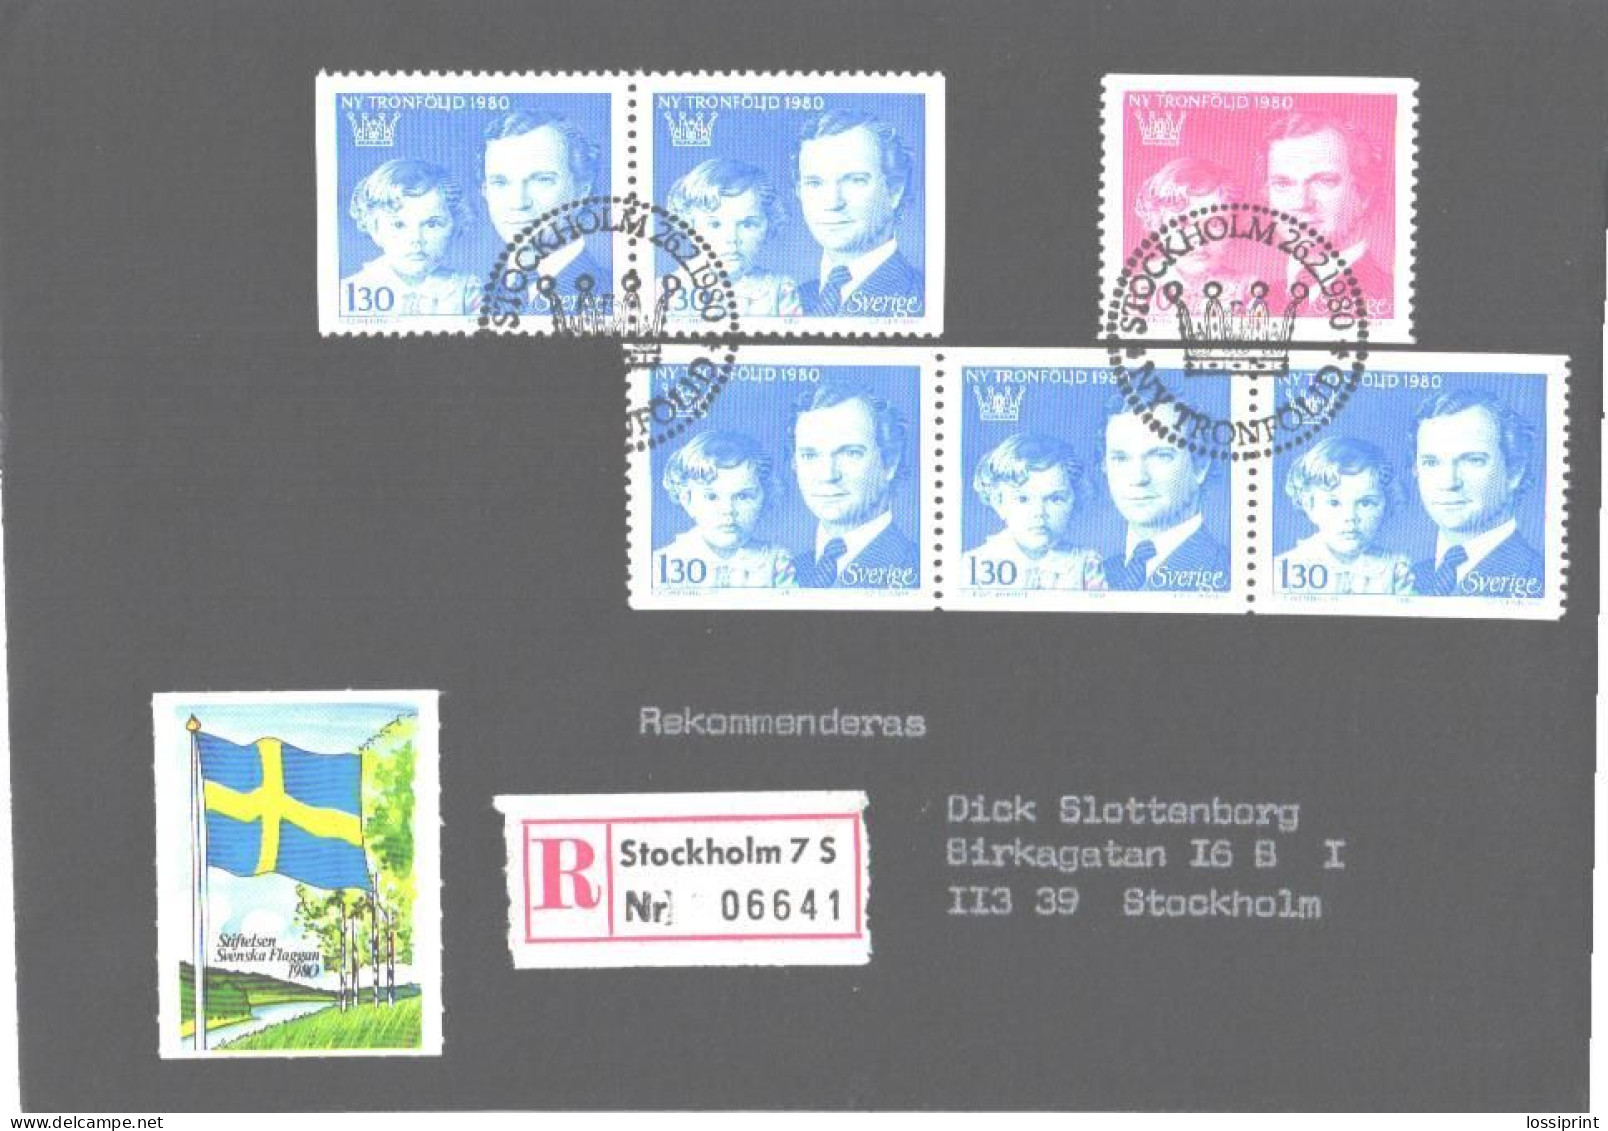 Sweden:FDC, Registered Letter NY Tronföljd, King, 1980 - Briefe U. Dokumente